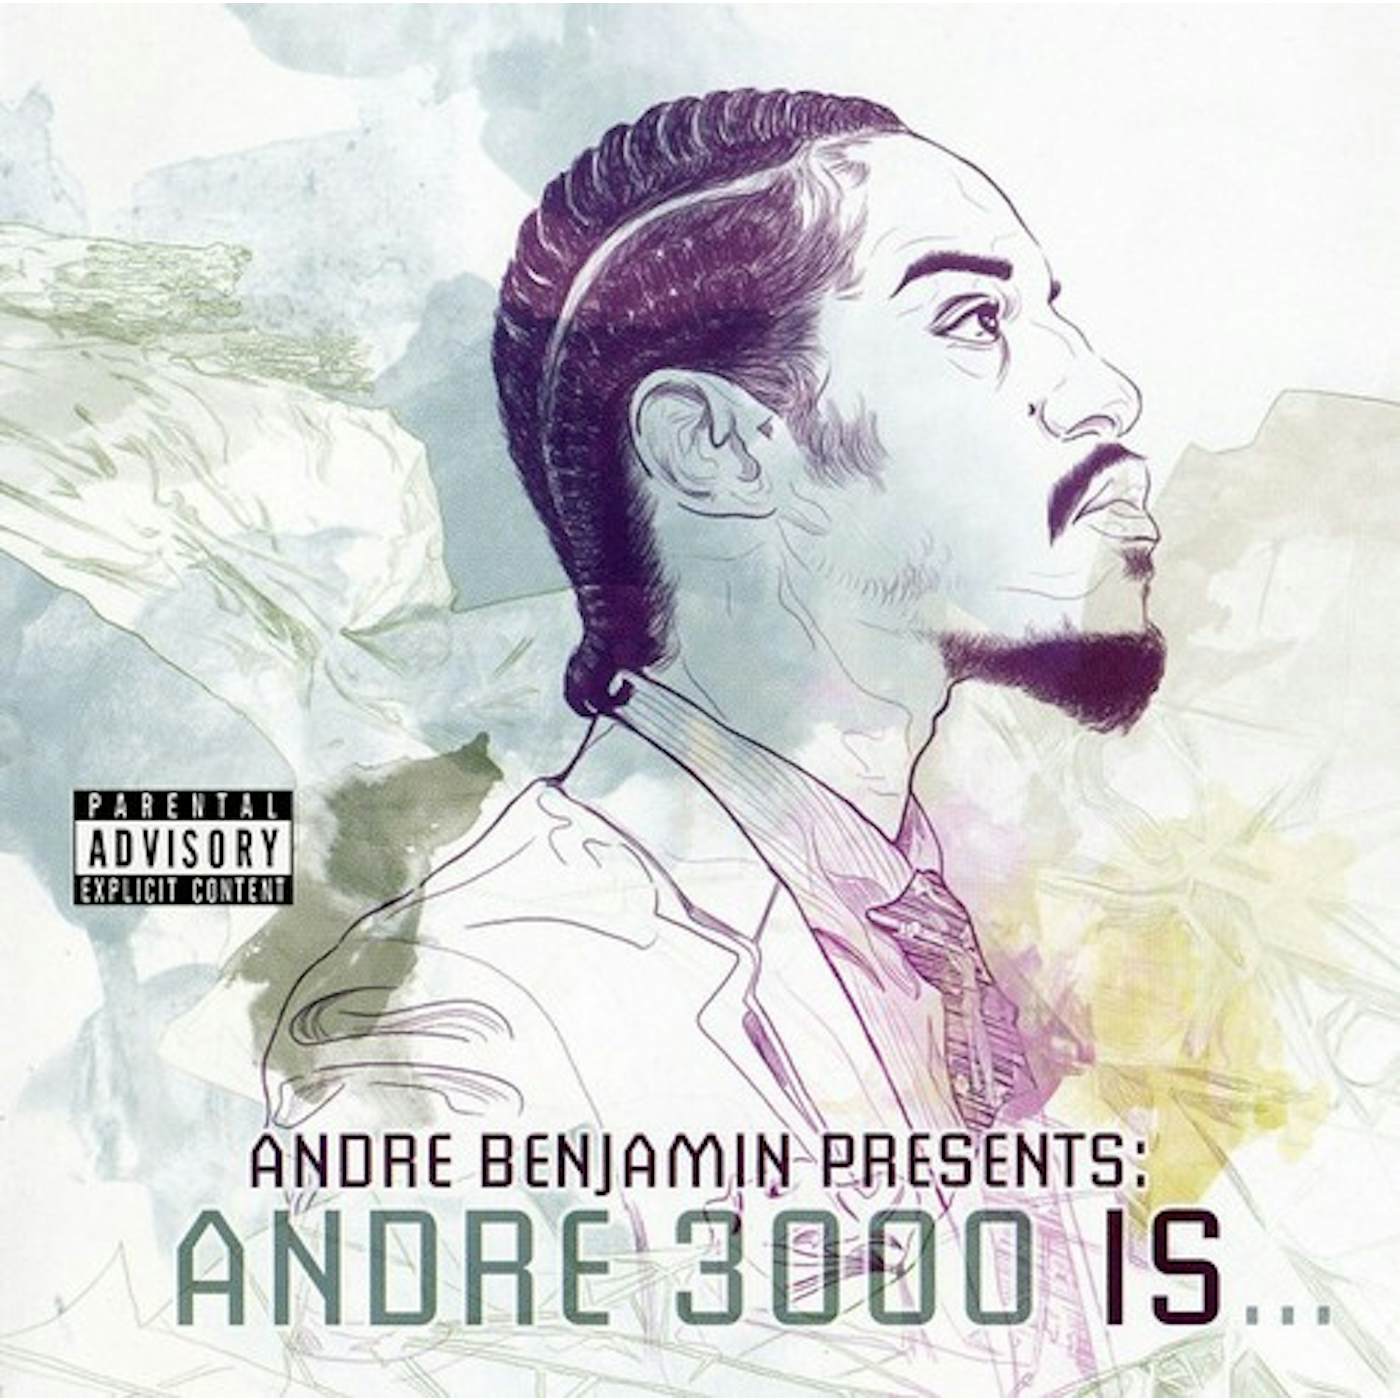 André 3000 ANDRE BENJAMIN PRESENTS CD